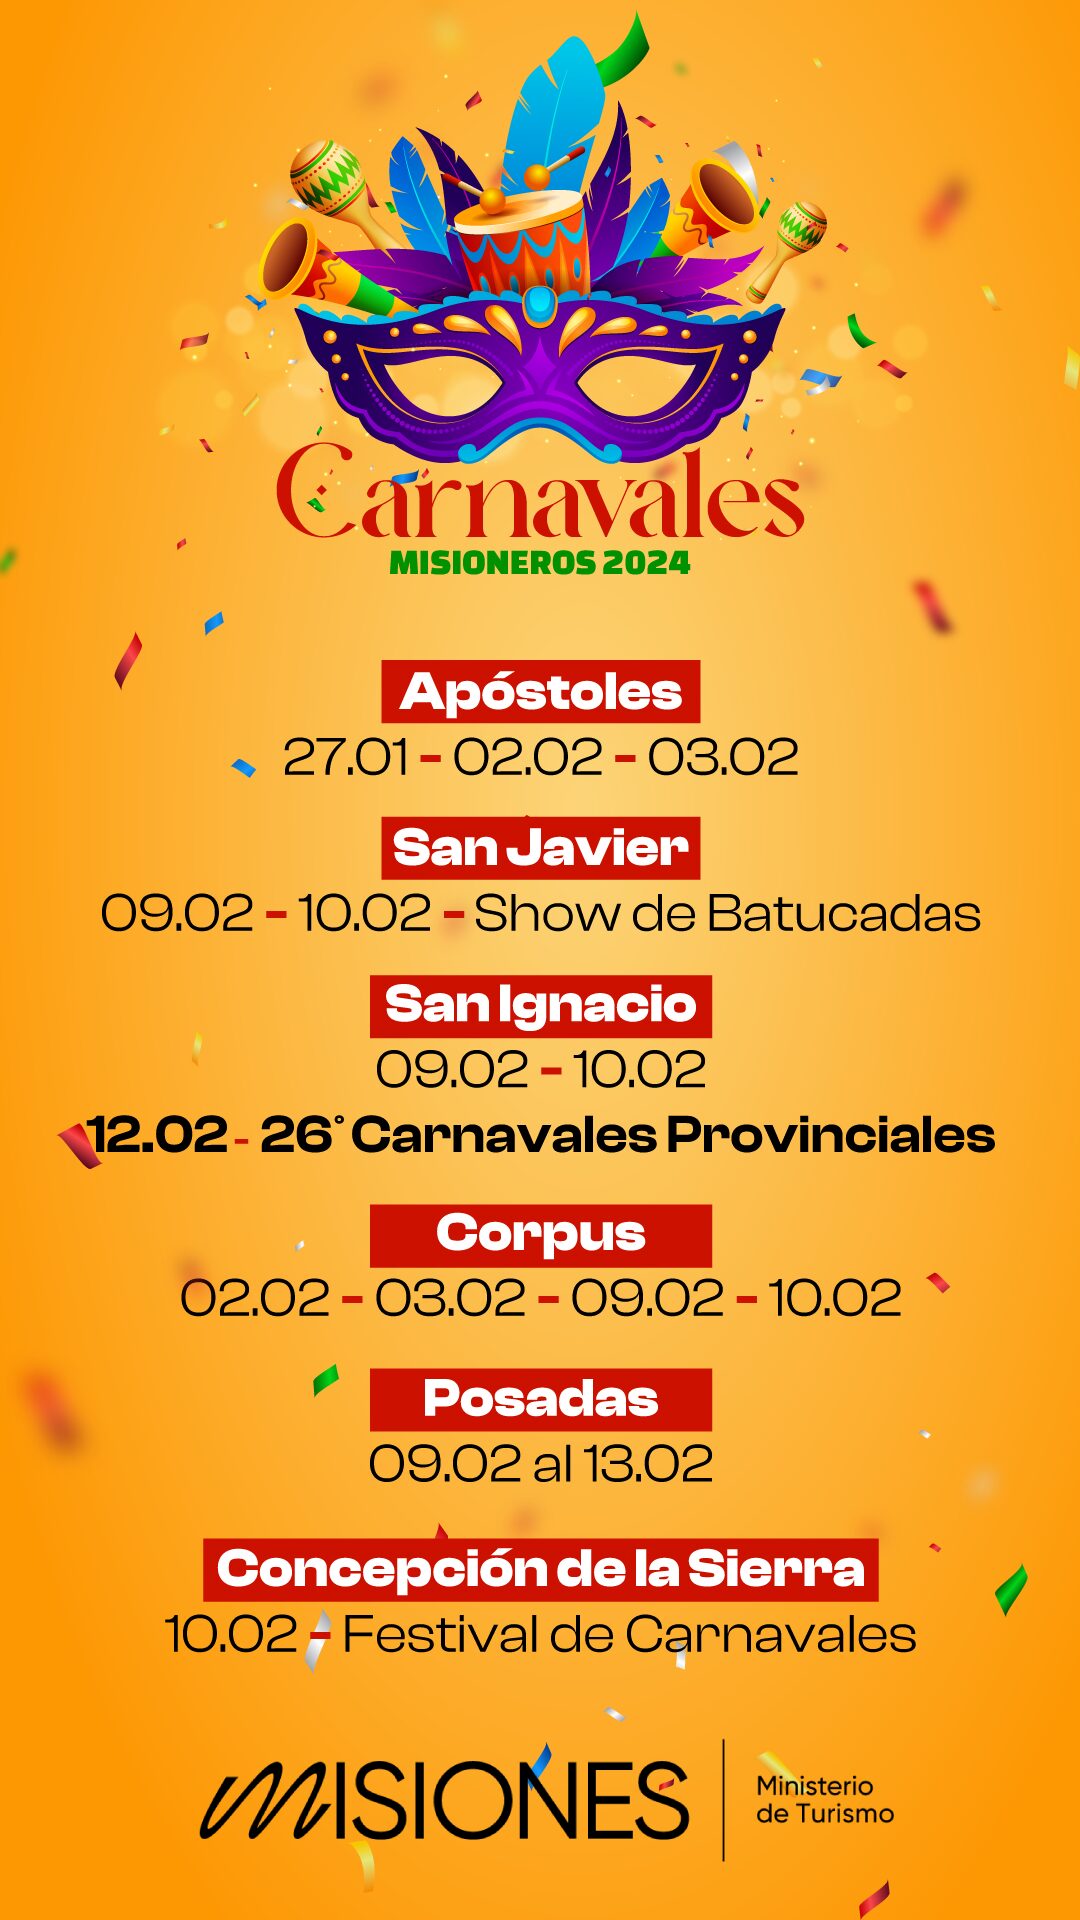 Apóstoles abre la temporada 2024 de los Carnavales Misioneros imagen-4